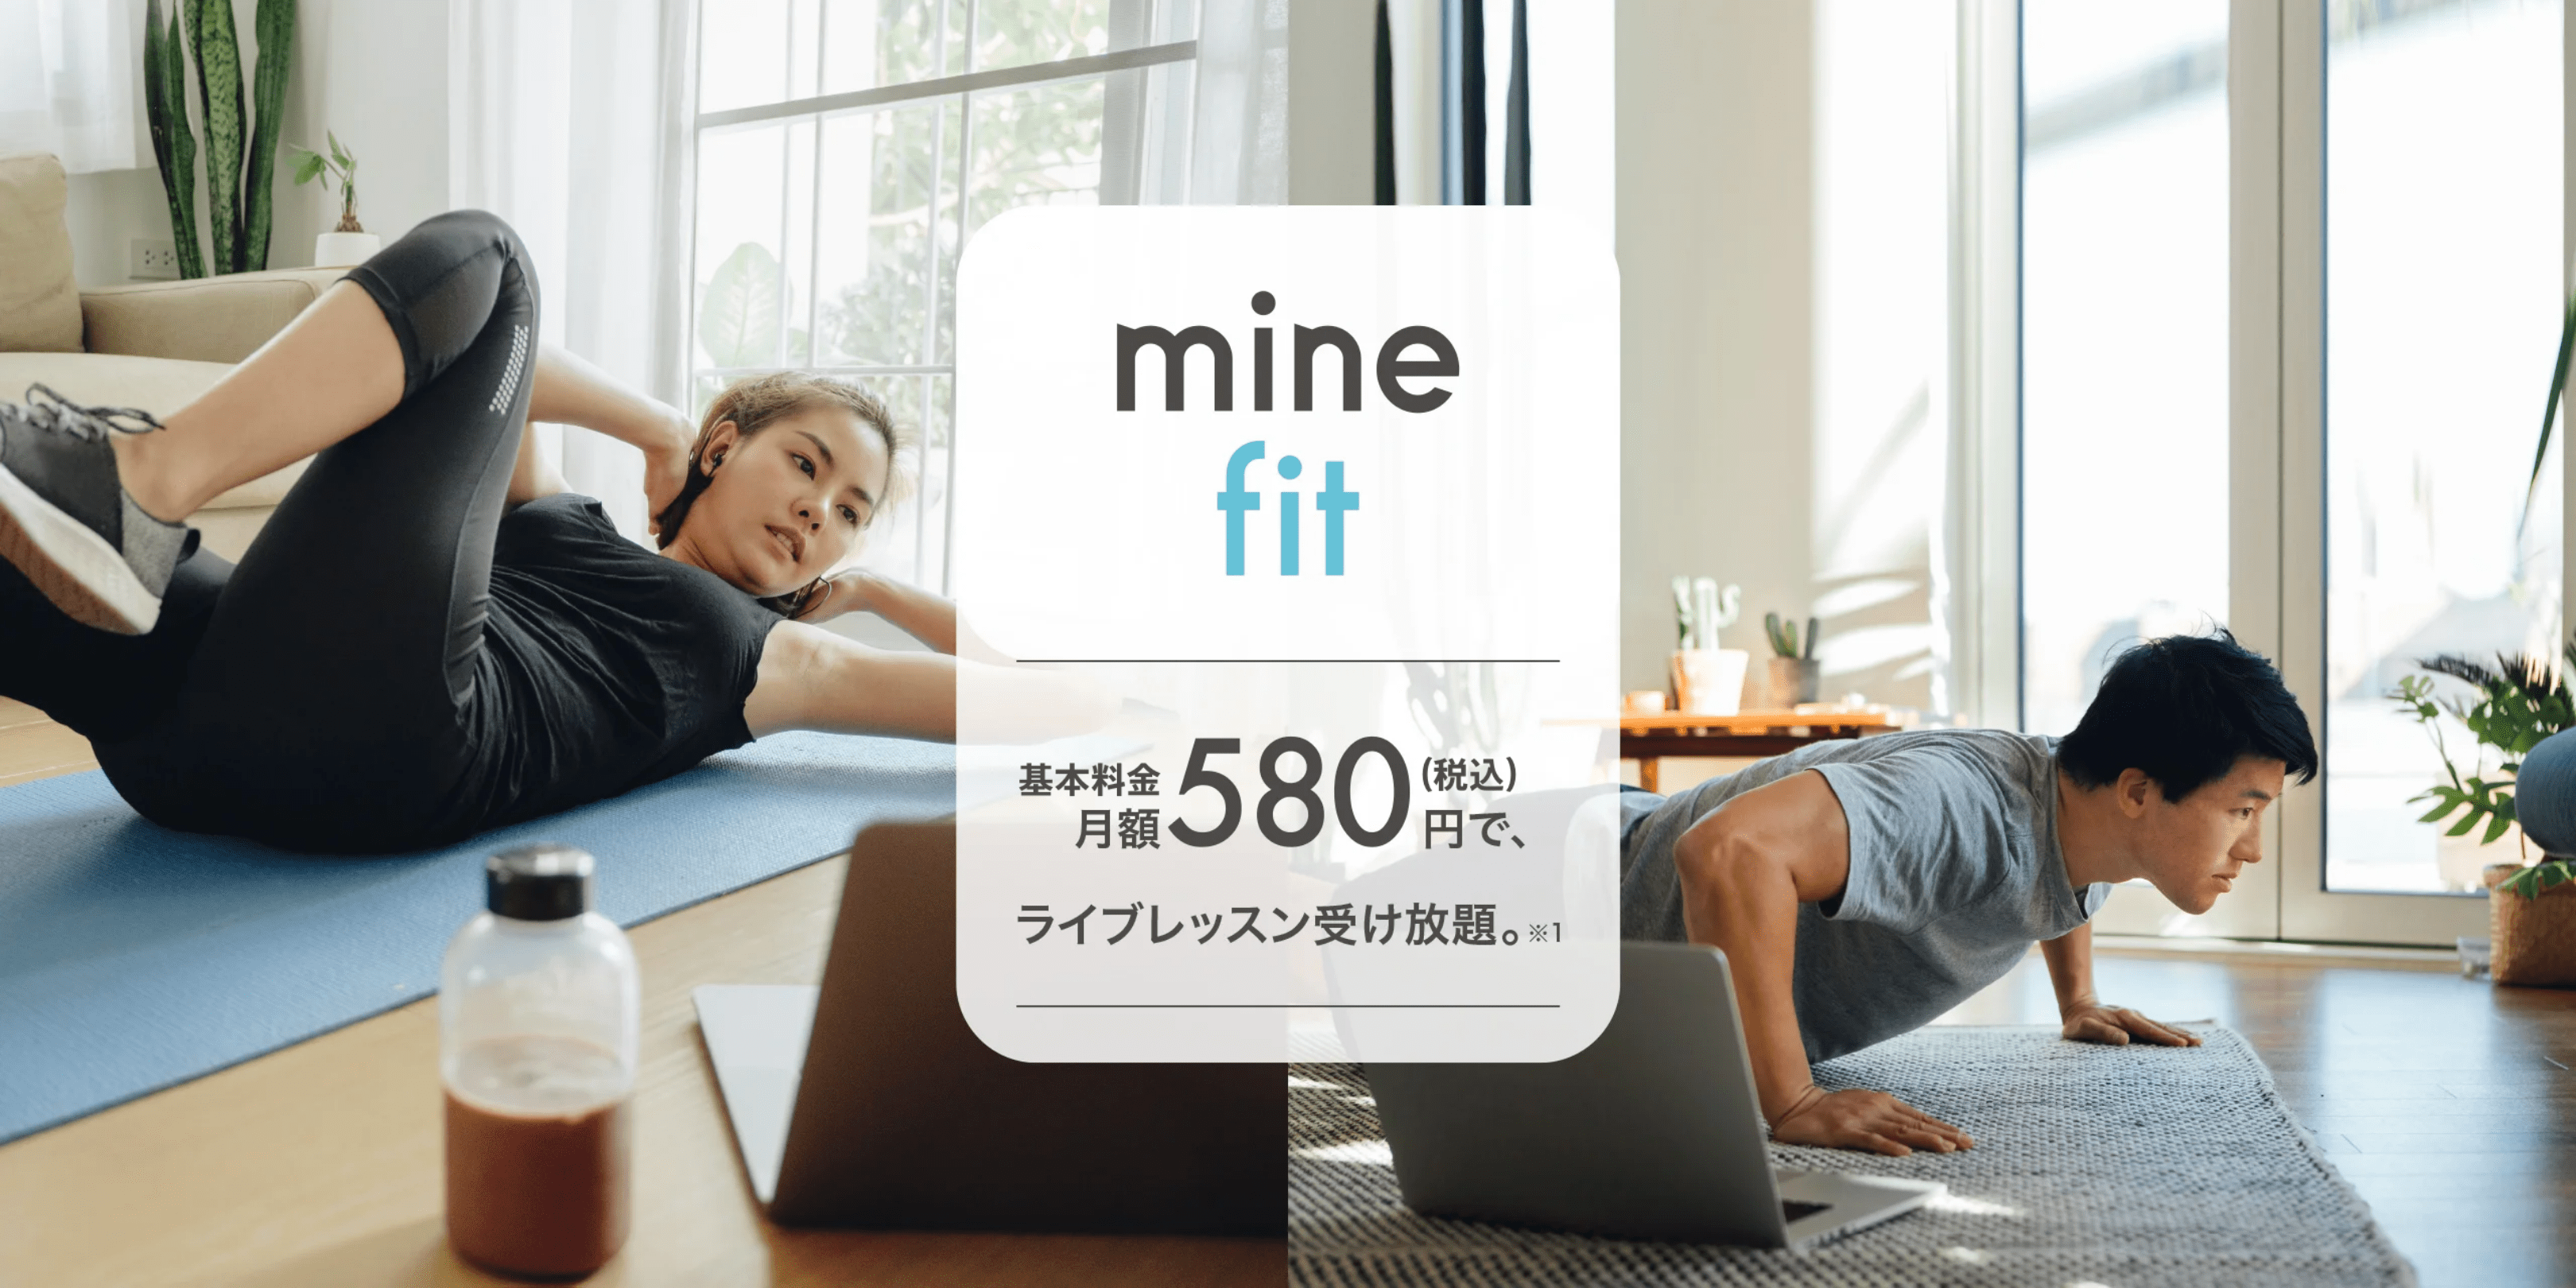 minefit app - 月額580円で、ライブレッスン受け放題。